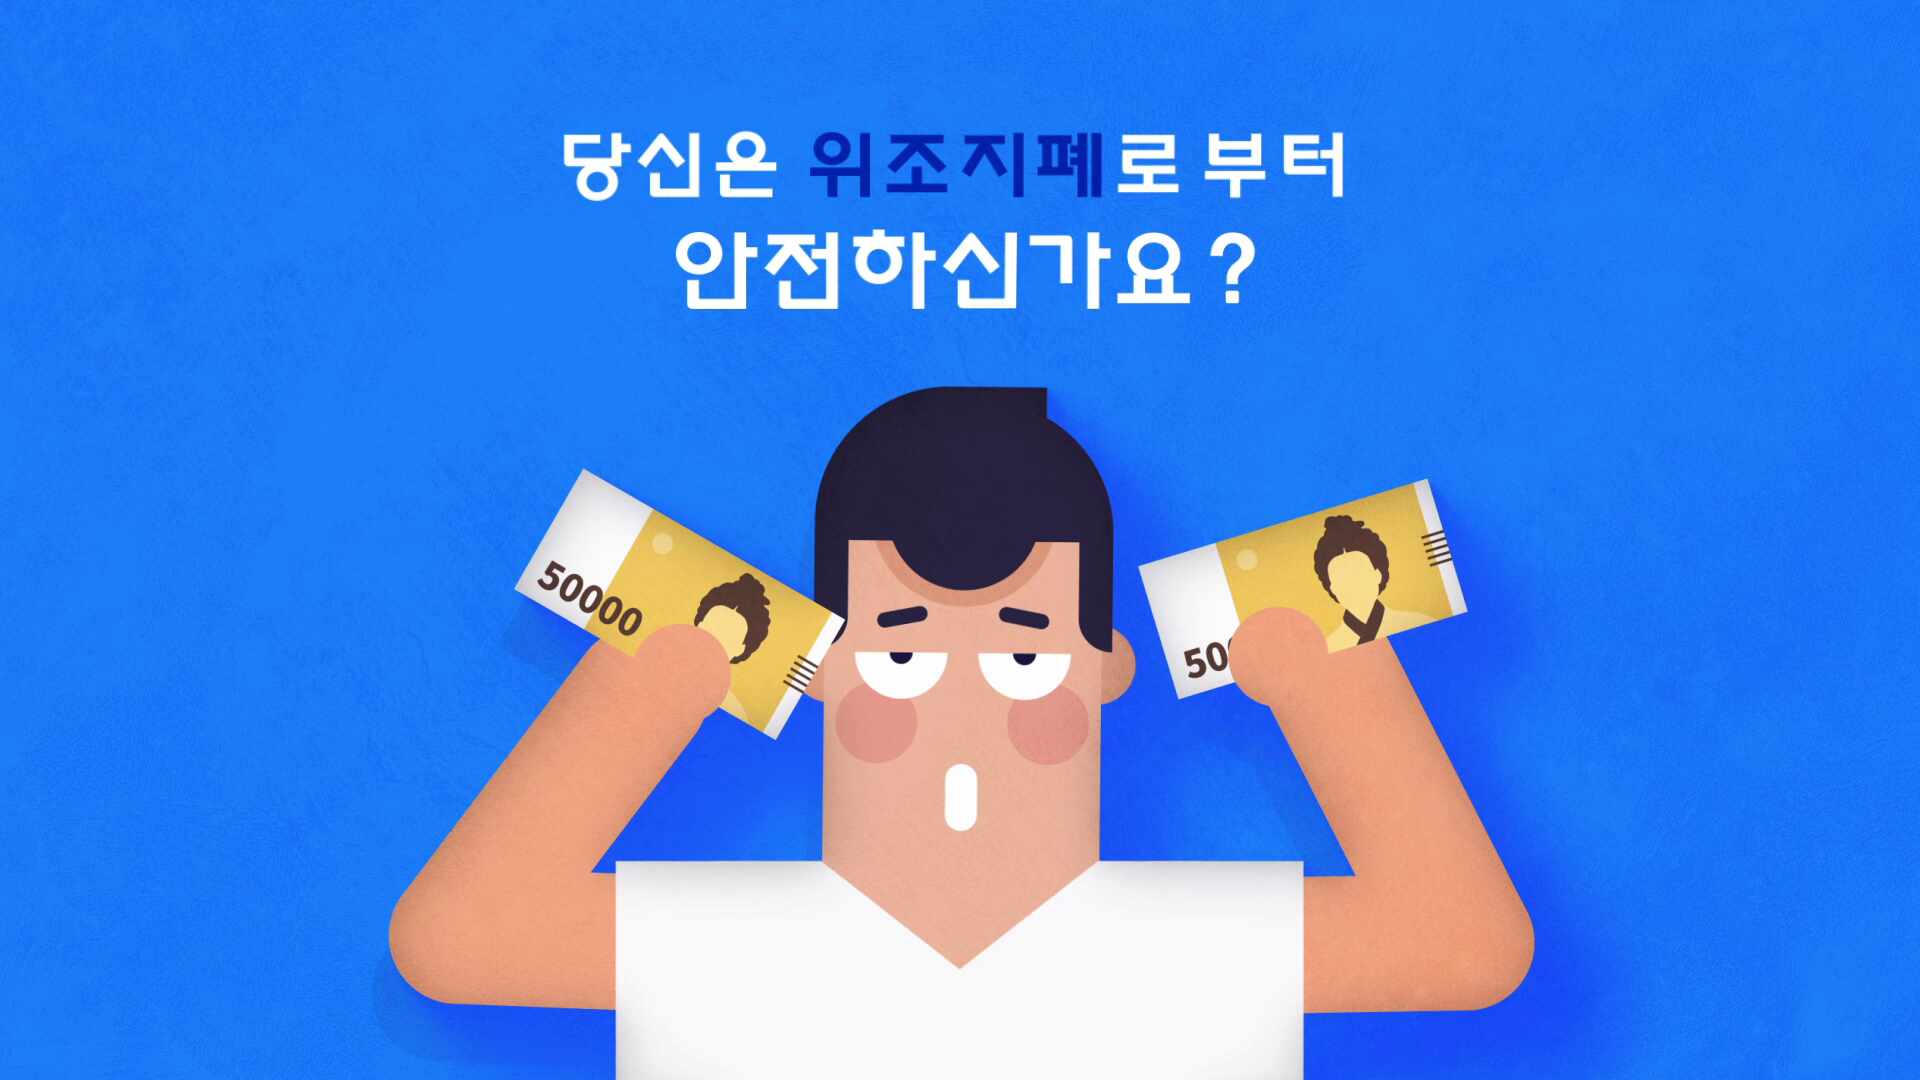 위조지폐 식별요령 홍보영상